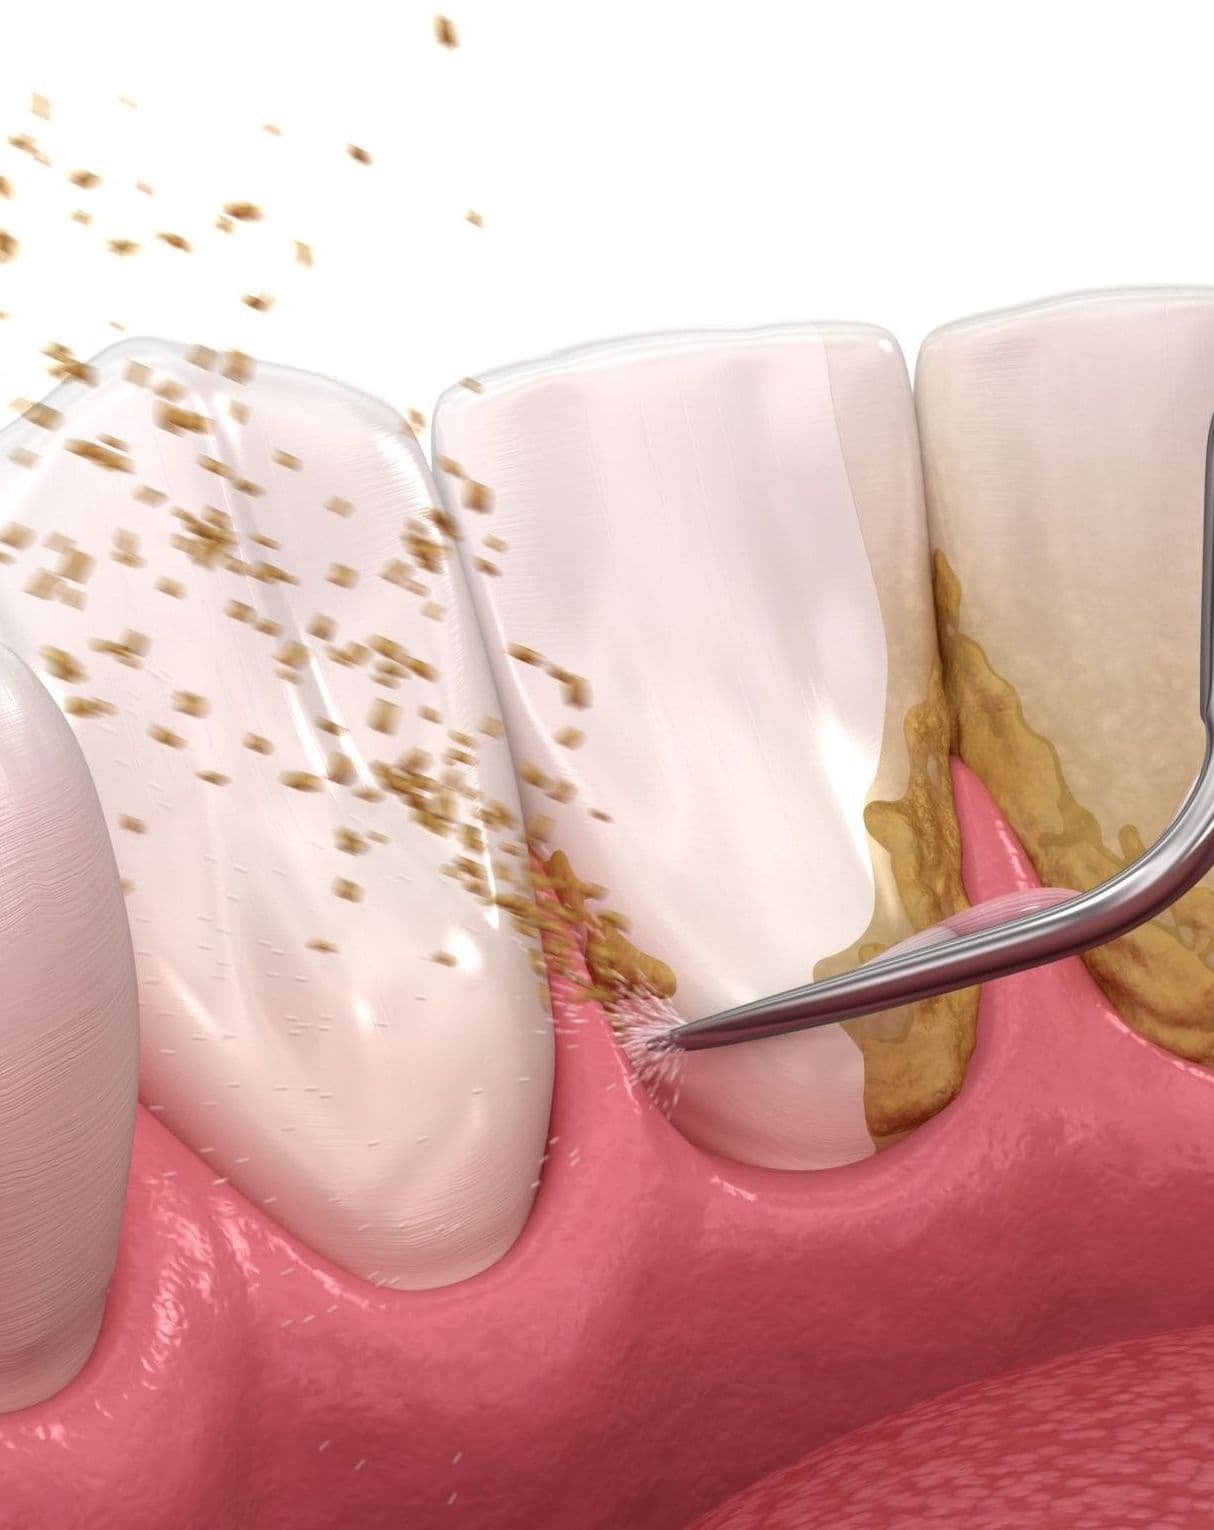 Правда или миф: удалять зубные отложения ОБЯЗАТЕЛЬНО каждые      6 месяцев!?